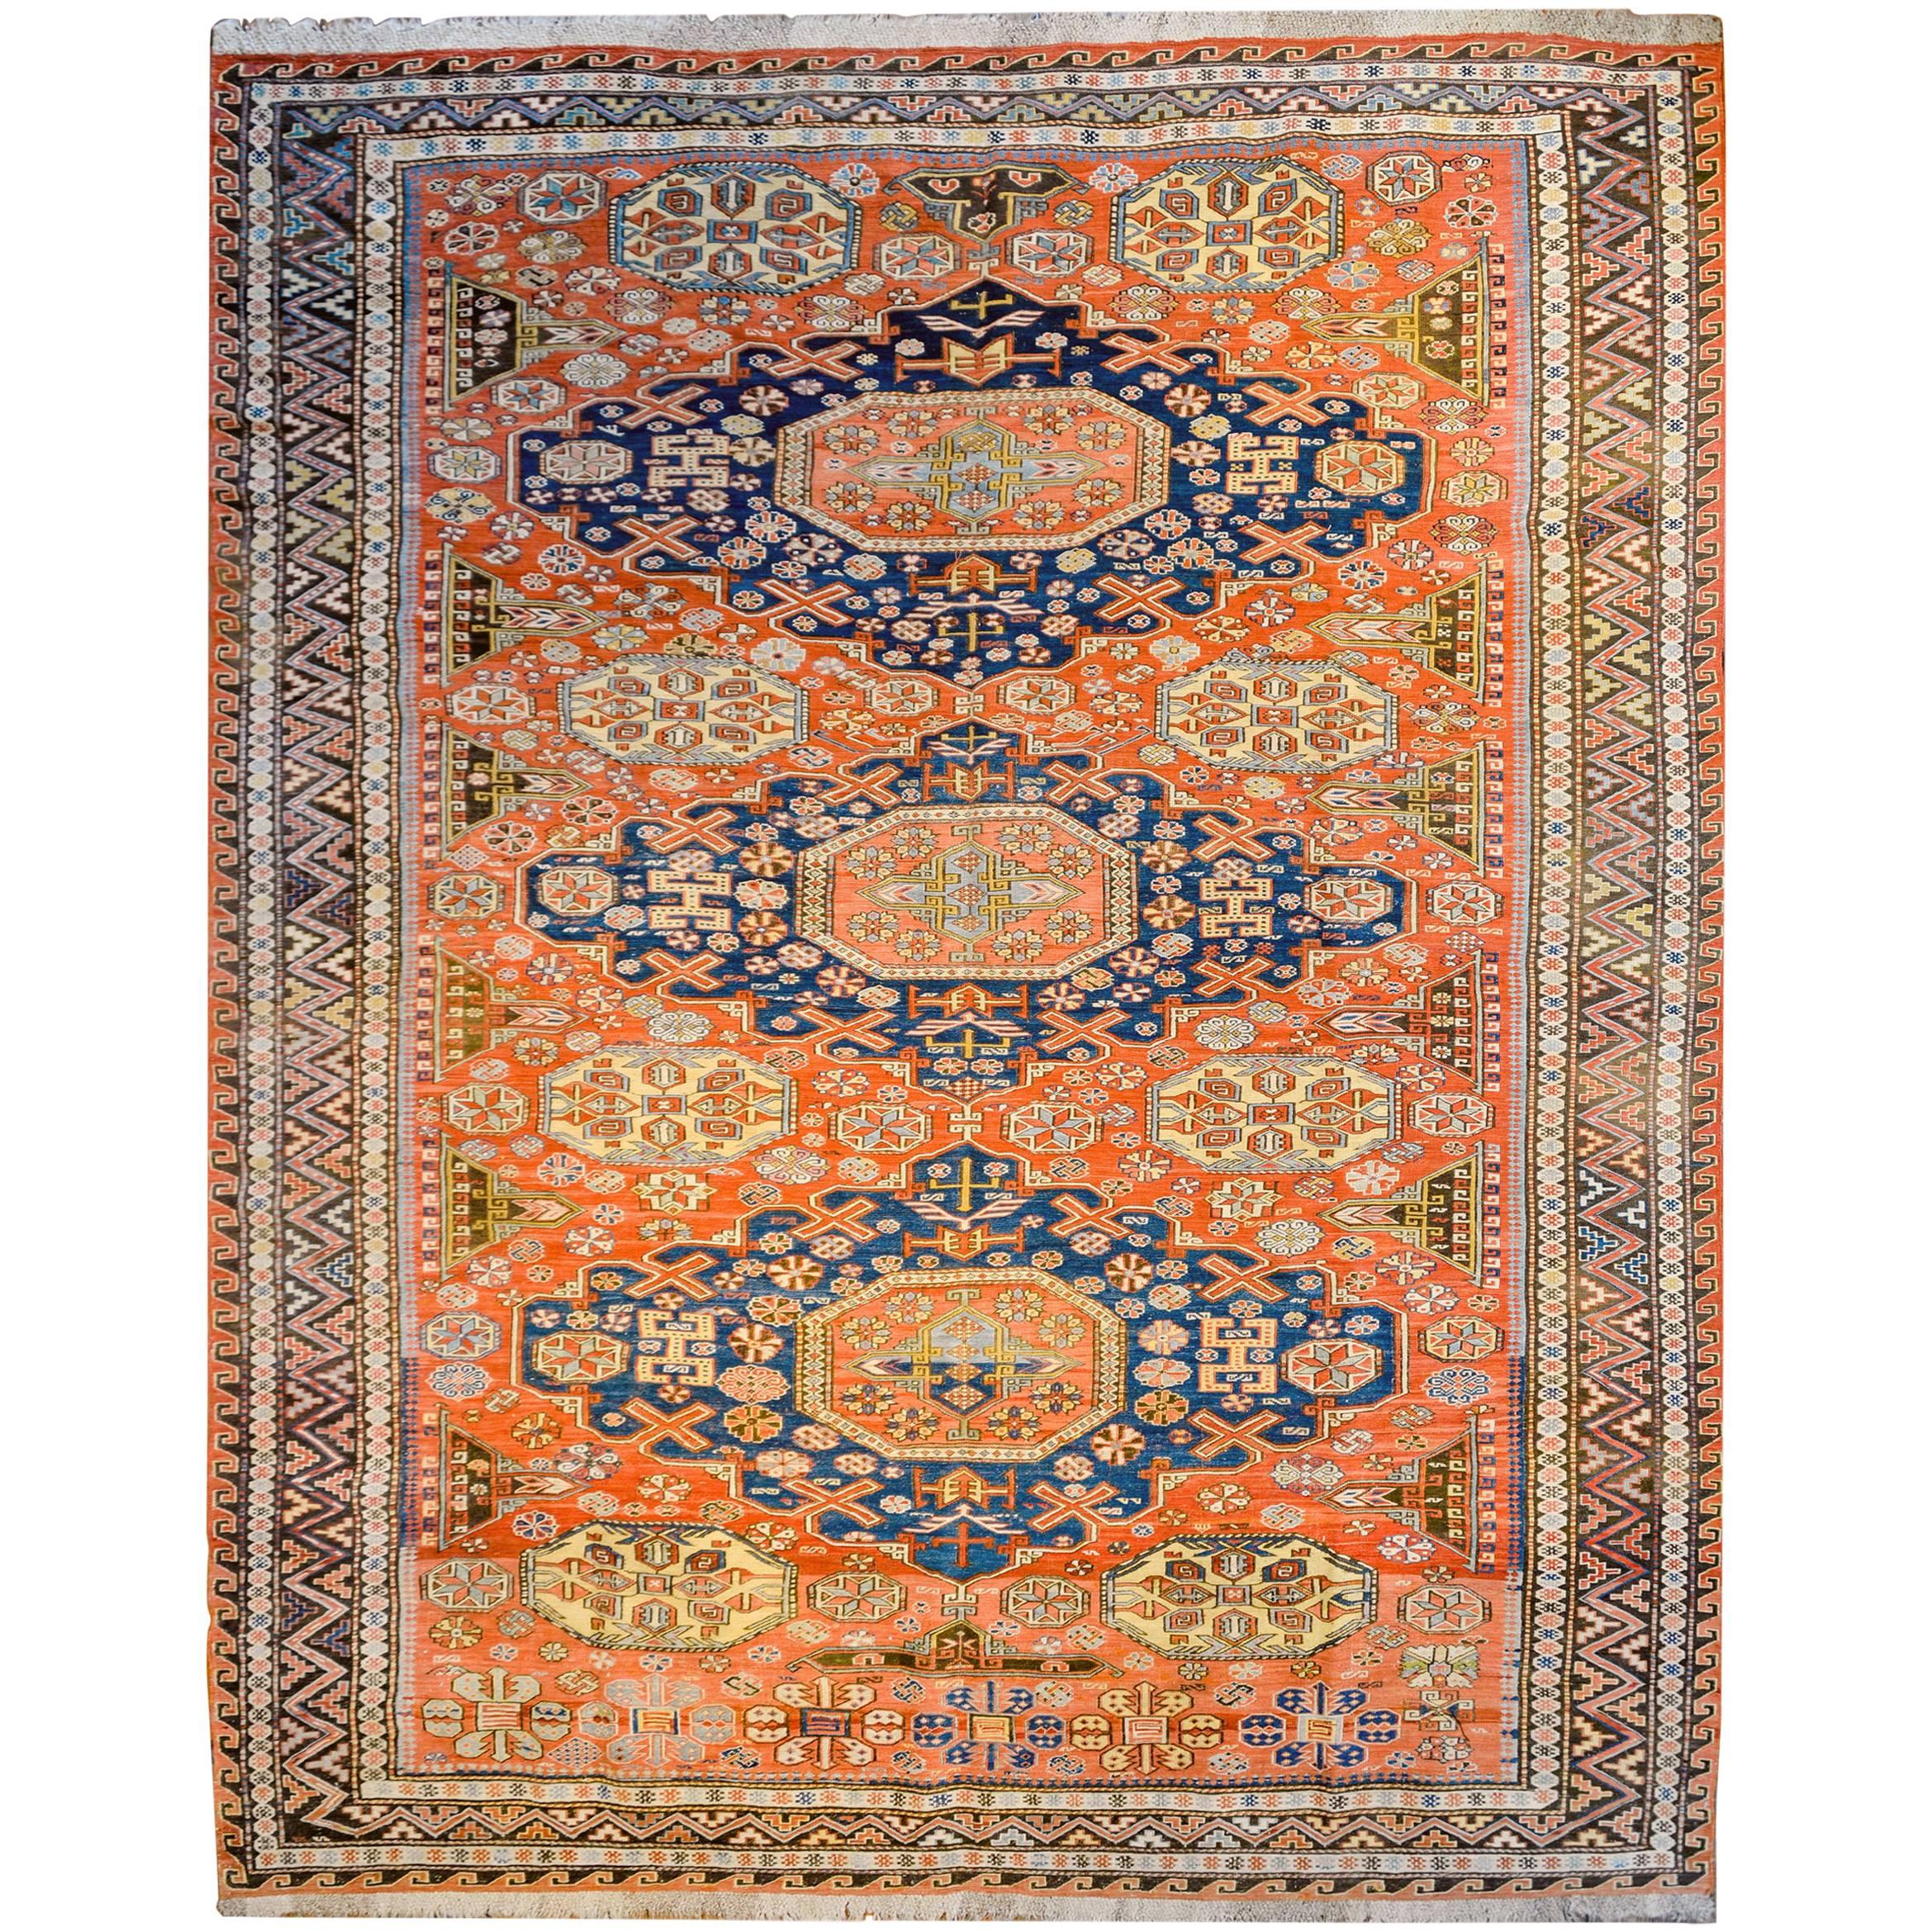 Incroyable tapis Sumak de la fin du 19ème siècle